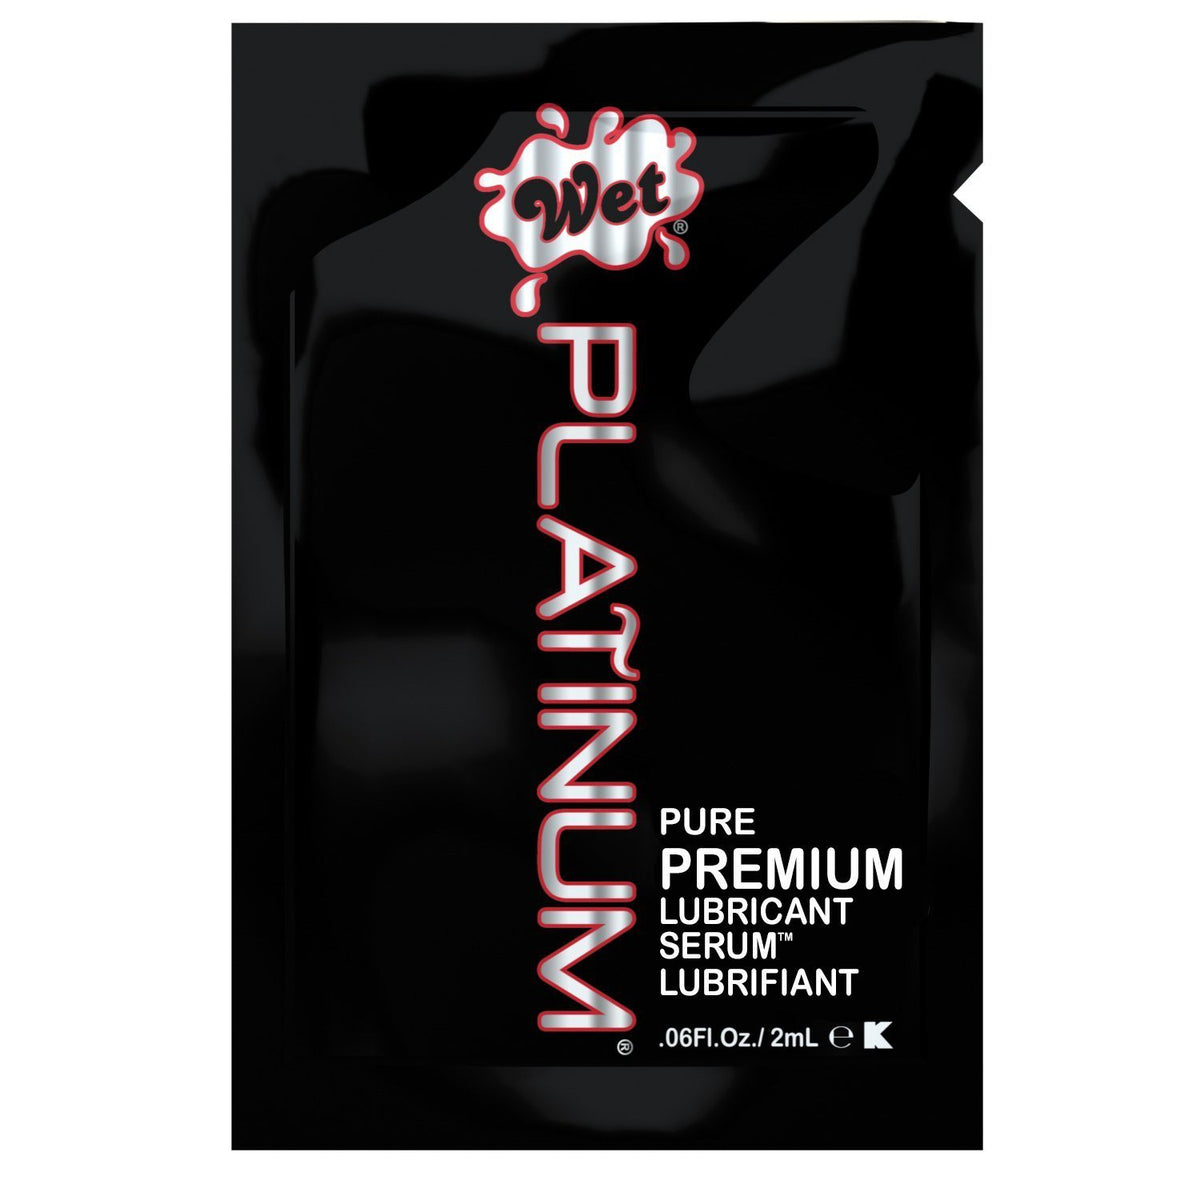 Wet - Platinum Pure Premium Lubricant 2ml (Black) -  Lube (Silicone Based)  Durio.sg